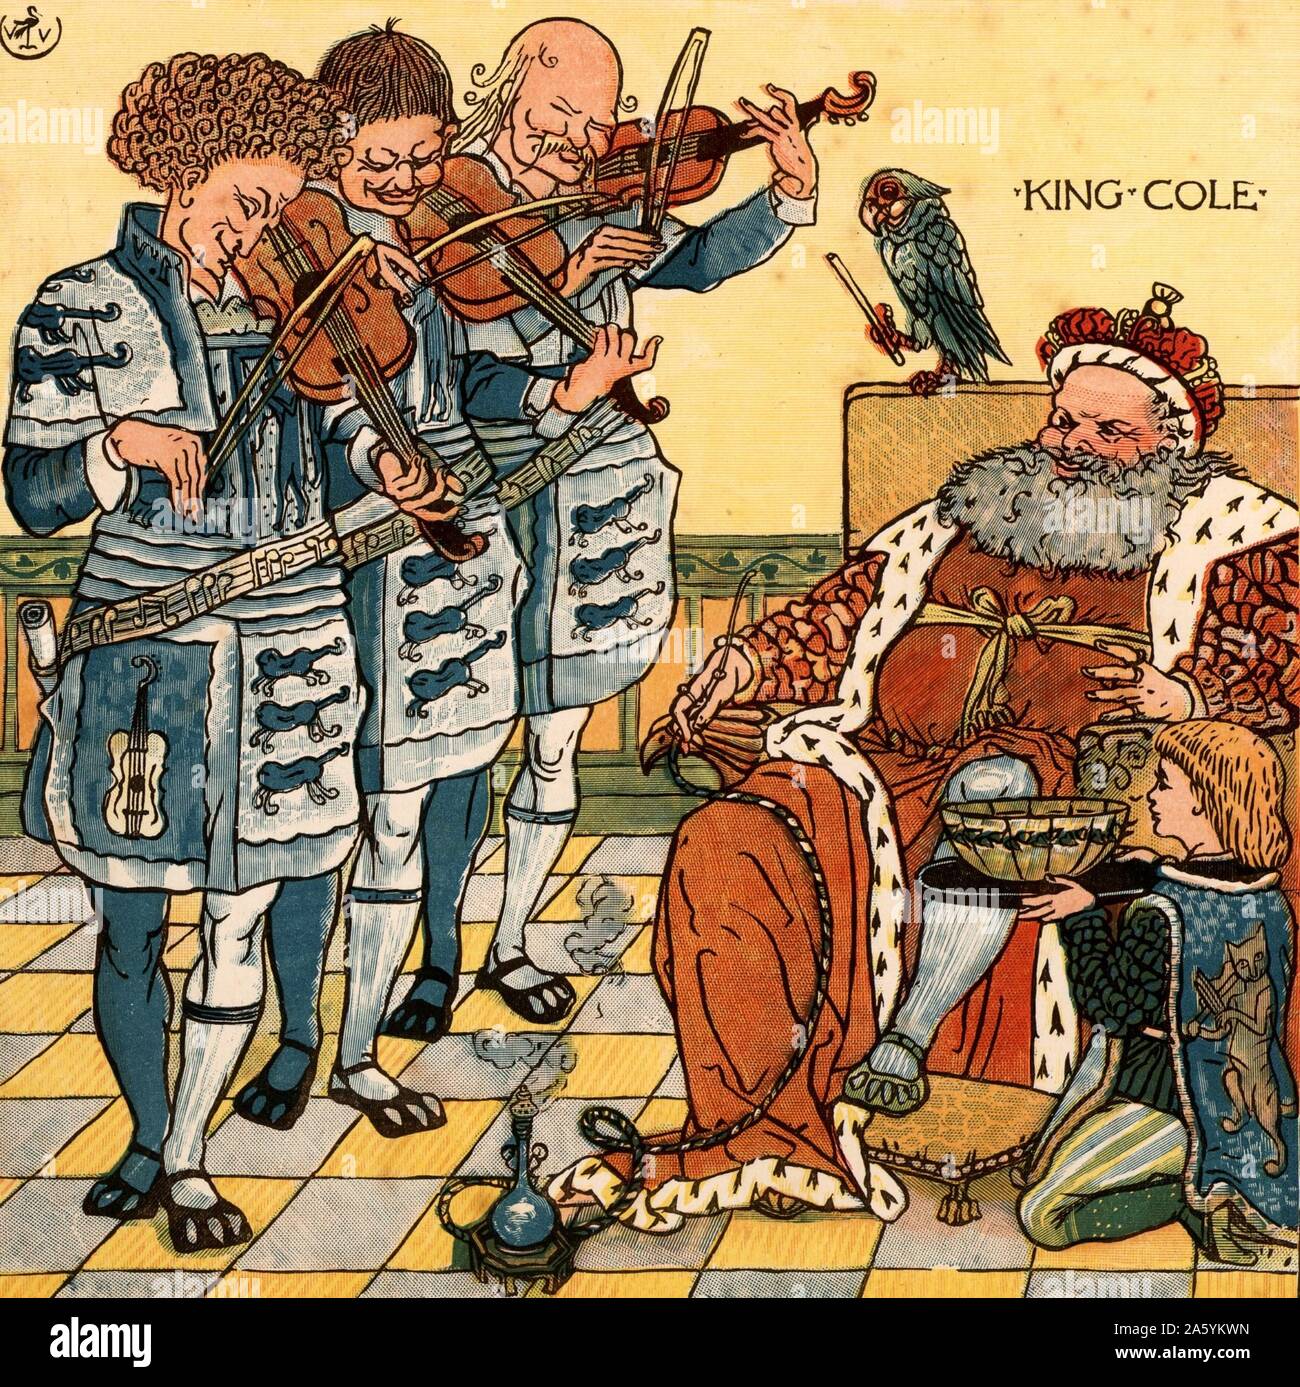 Old King Cole war eine fröhliche alte Seele / und ein Frohes alte Seele war er./Er für seine Pfeife, und er rief seine Schüssel/Und er rief seinen Fiddlers drei. King Cole ist das Rauchen einer Wasserpfeife und ist durch seine drei Geigern, die von einem Papagei durchgeführt werden, ein Ständchen. Abbildung des englischen Künstlers Walter Crane (1845-1915) für ein Buch der Kinderreime von Ing ein Lied von Sixpence" (London, 1866). Farbe gedruckten Holzstich. Stockfoto